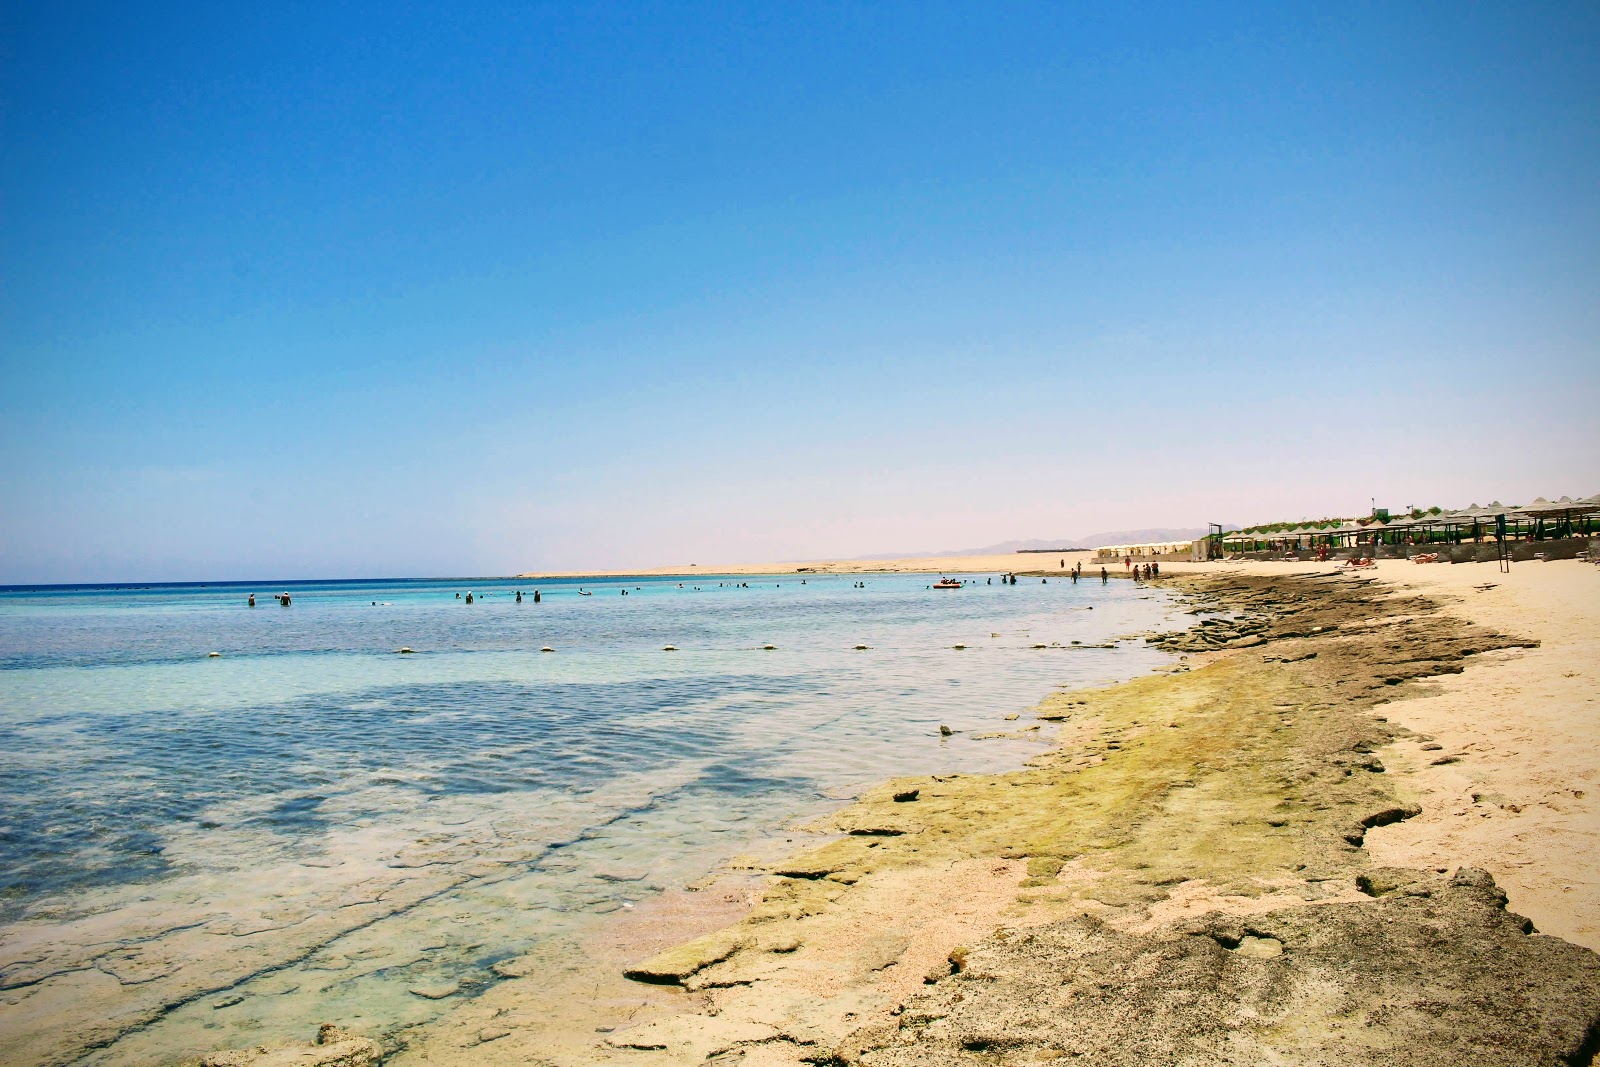 Foto de Fantazia Beach - lugar popular entre los conocedores del relax